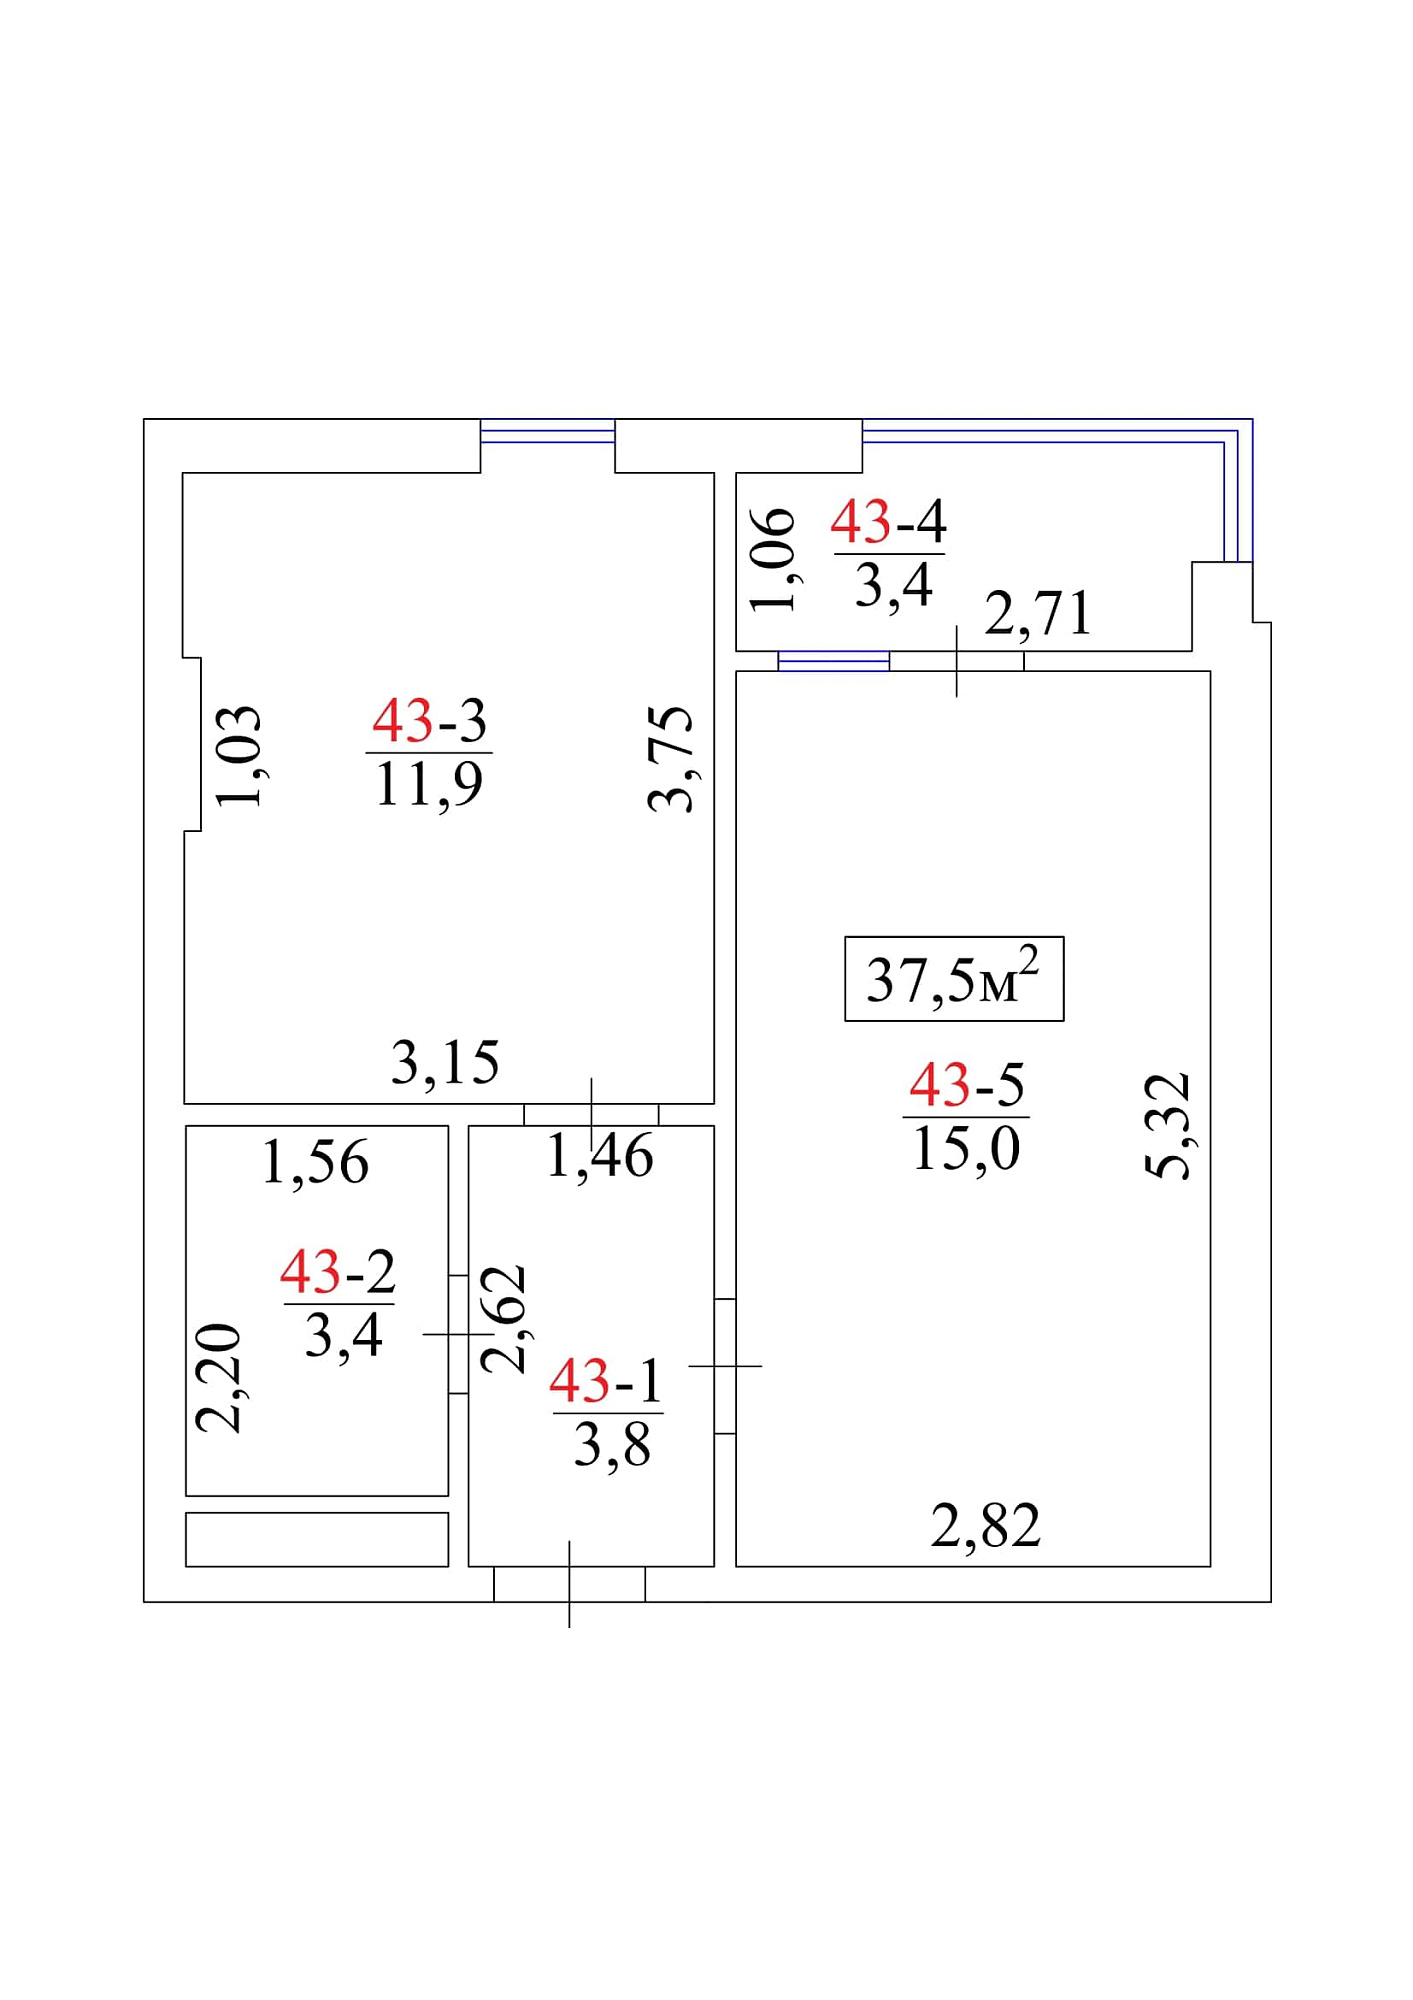 Планировка 1-к квартира площей 37.5м2, AB-01-05/0042а.